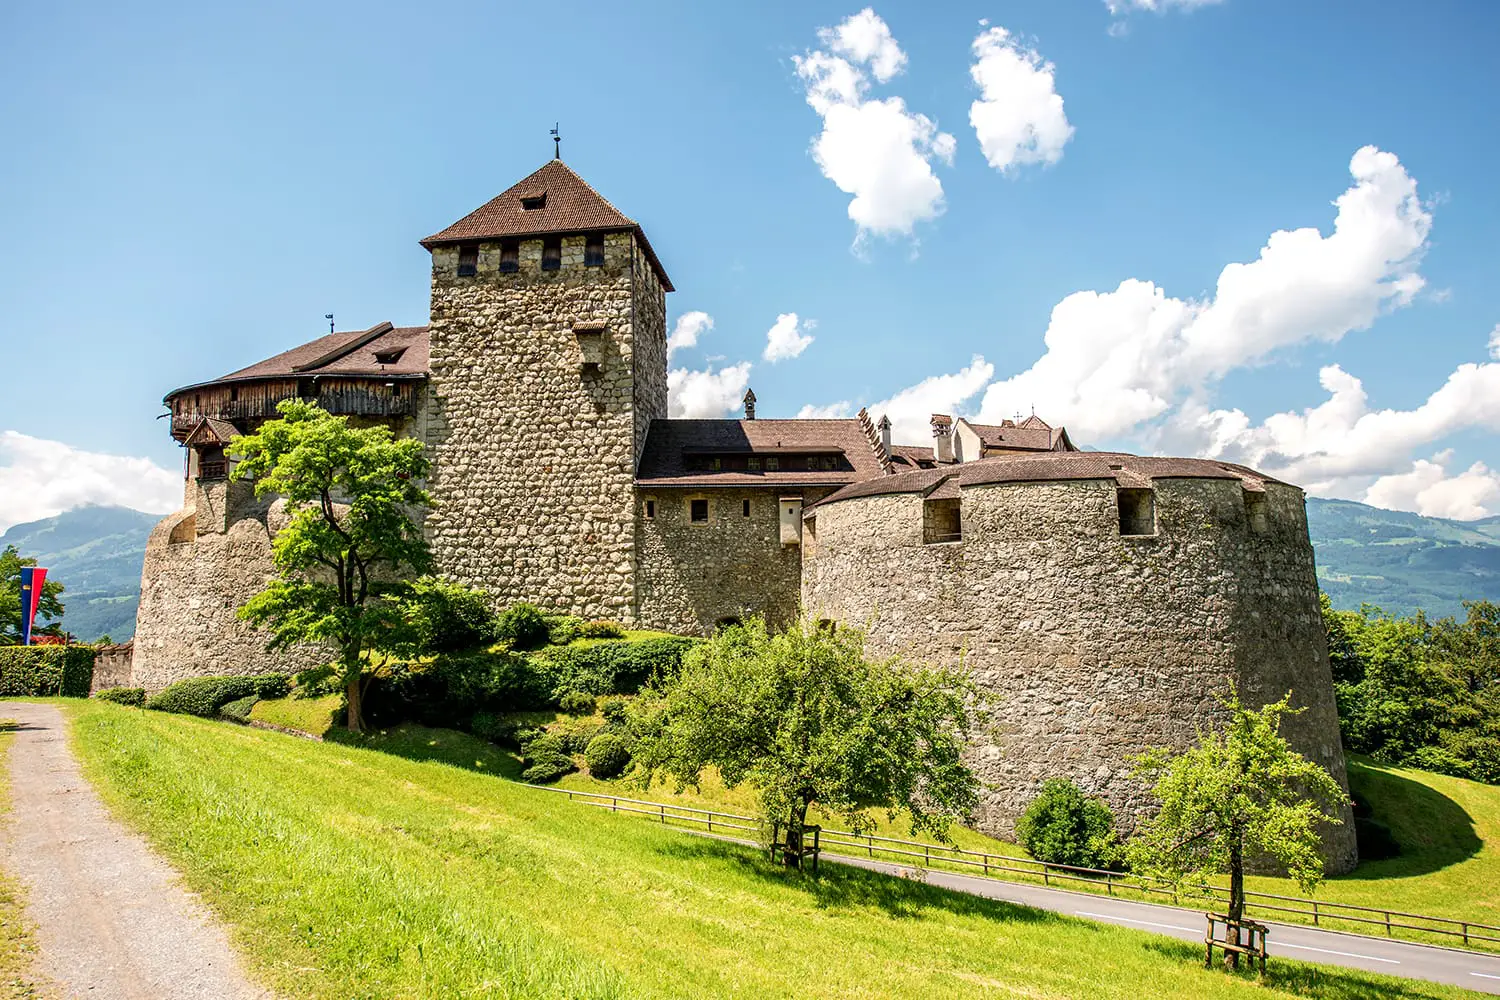 Άποψη τοπίου στο κάστρο Vaduz στην πρωτεύουσα του Λιχτενστάιν.  Αυτό το κάστρο είναι το παλάτι και η επίσημη κατοικία του Πρίγκιπα του Λιχτενστάιν